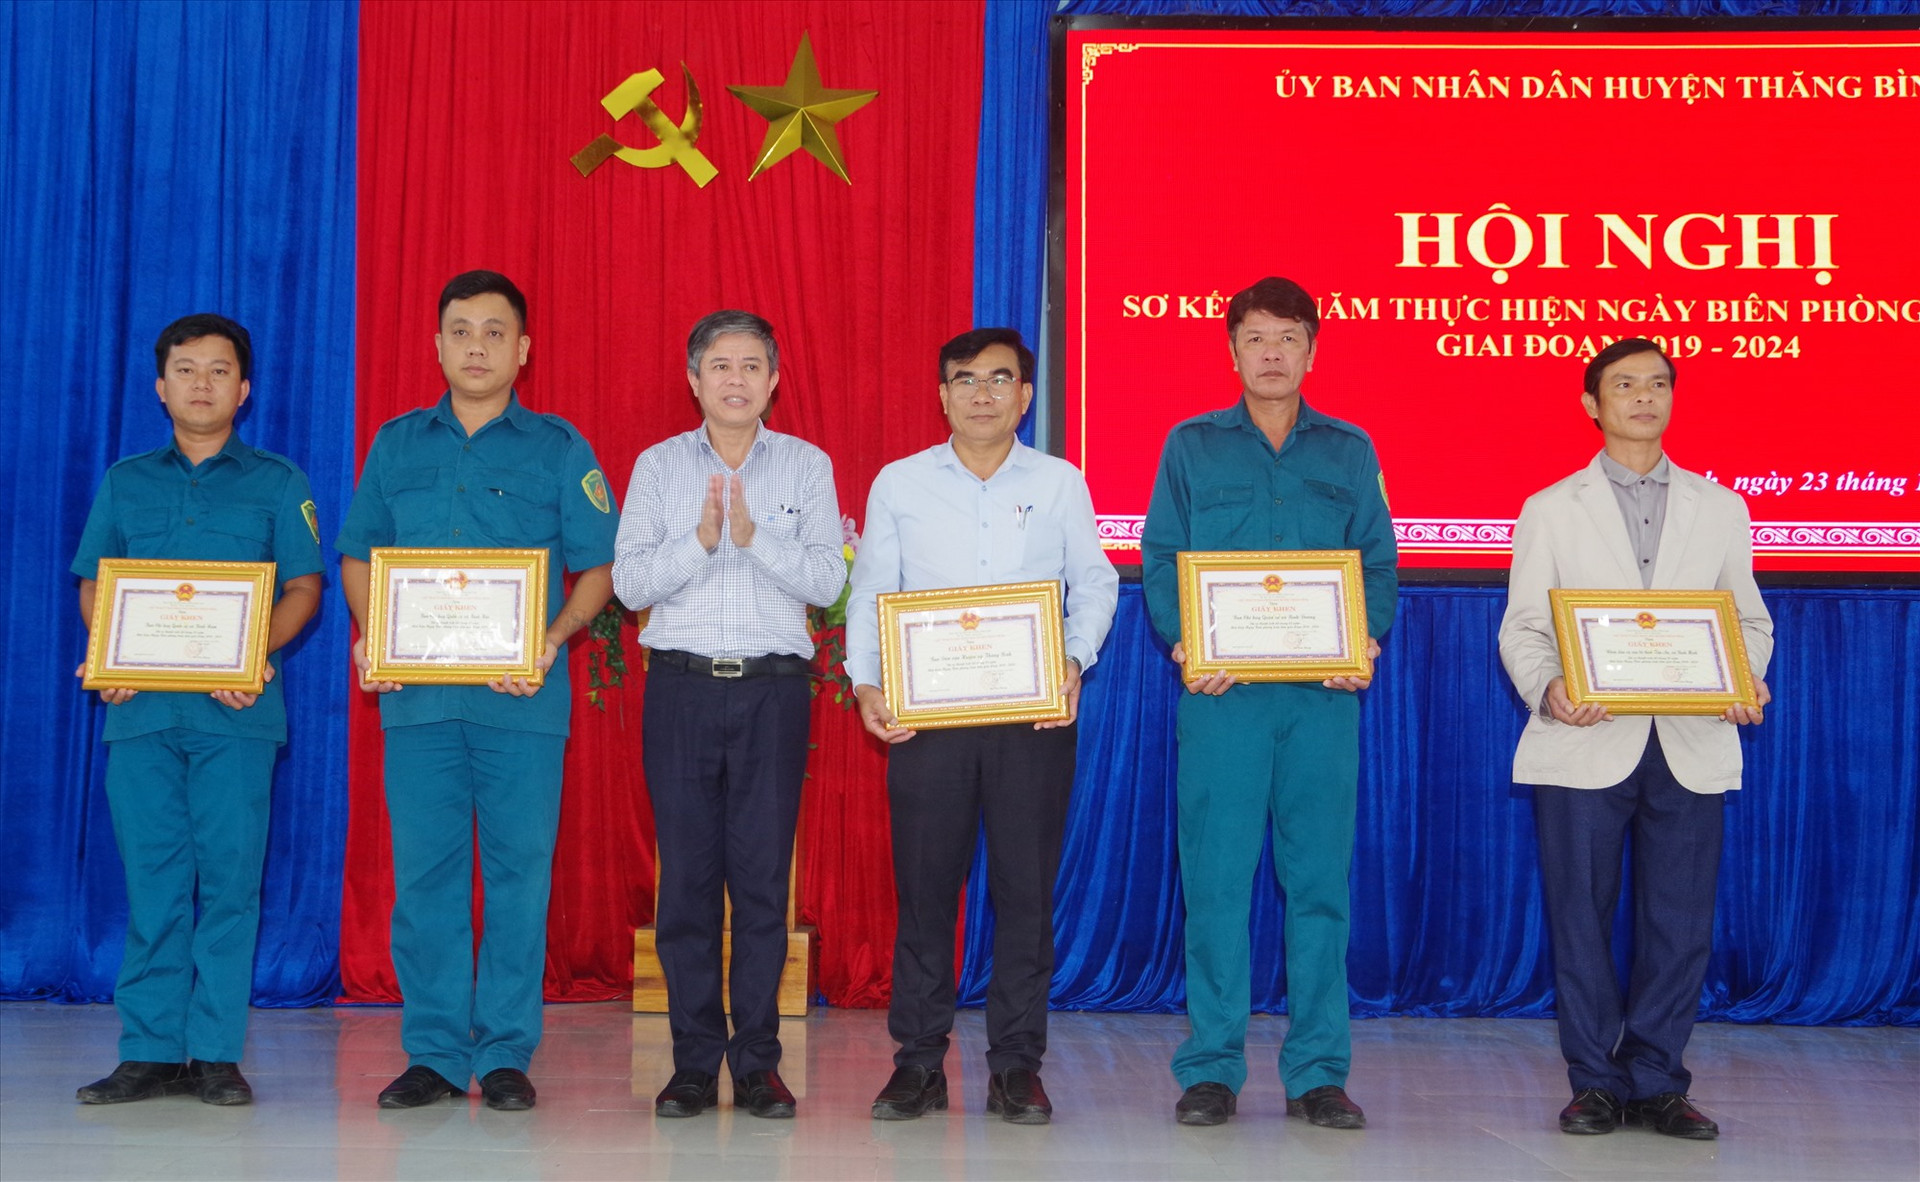 Ông Võ Văn Hùng - Chủ tịch UBND huyện tặng giấy khen các tập thể có thành tích xuất sắc trong thực hiện ngày Biên phòng toàn dân. Ảnh: HỒNG ANH